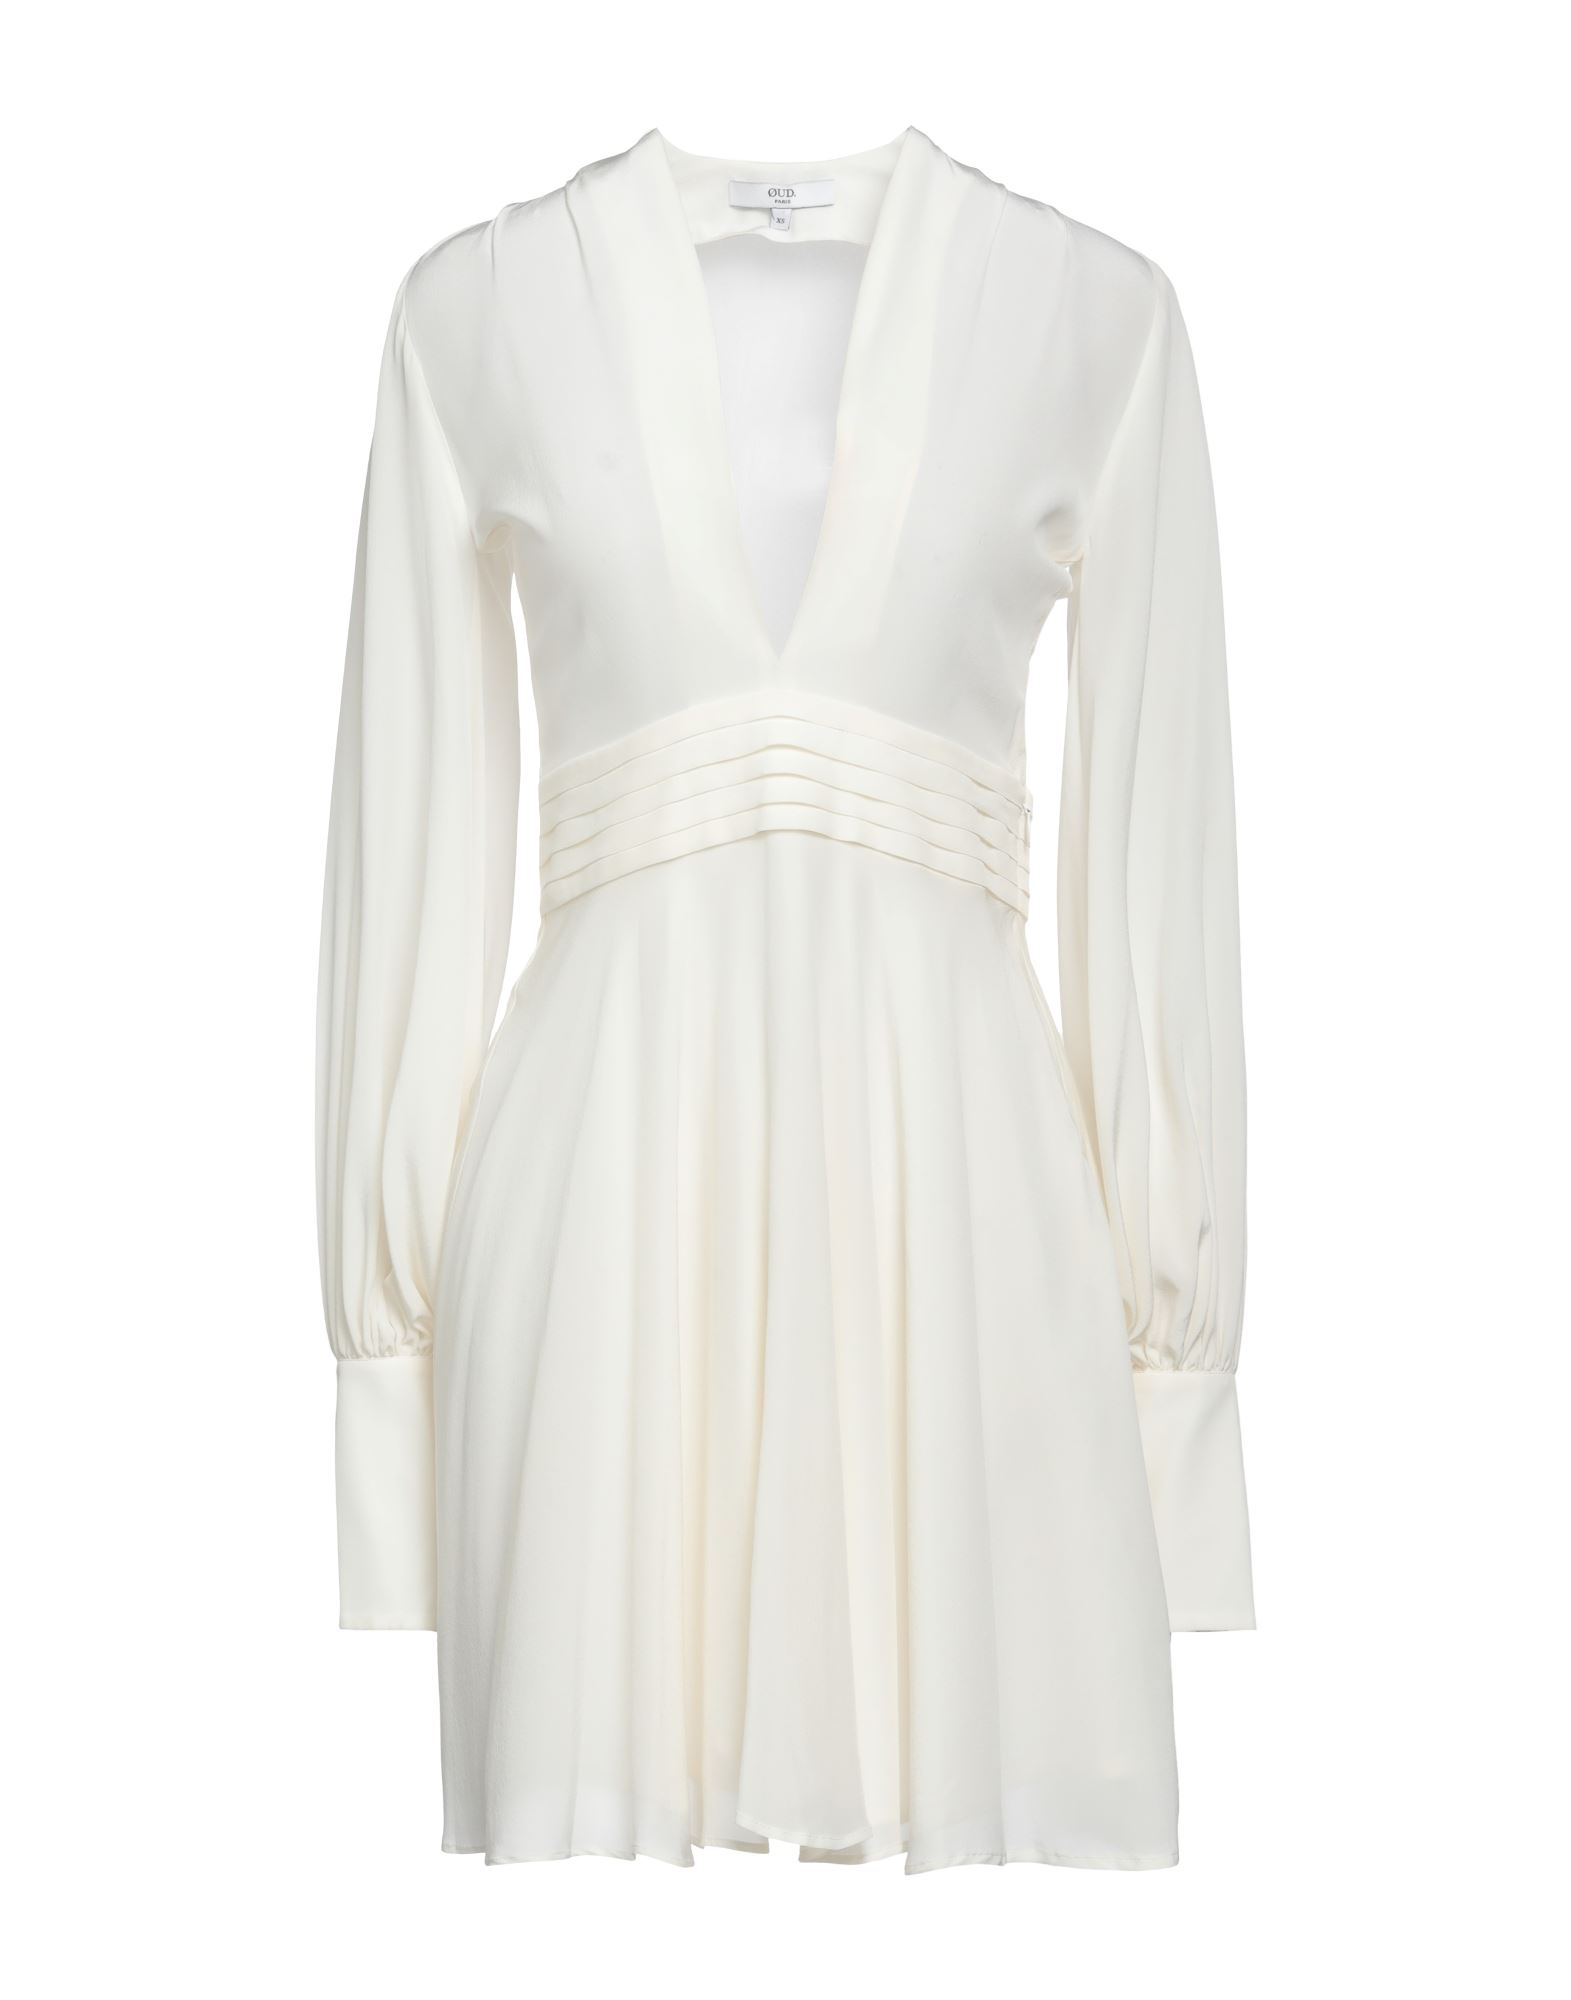 Øud. Paris Short Dresses In White